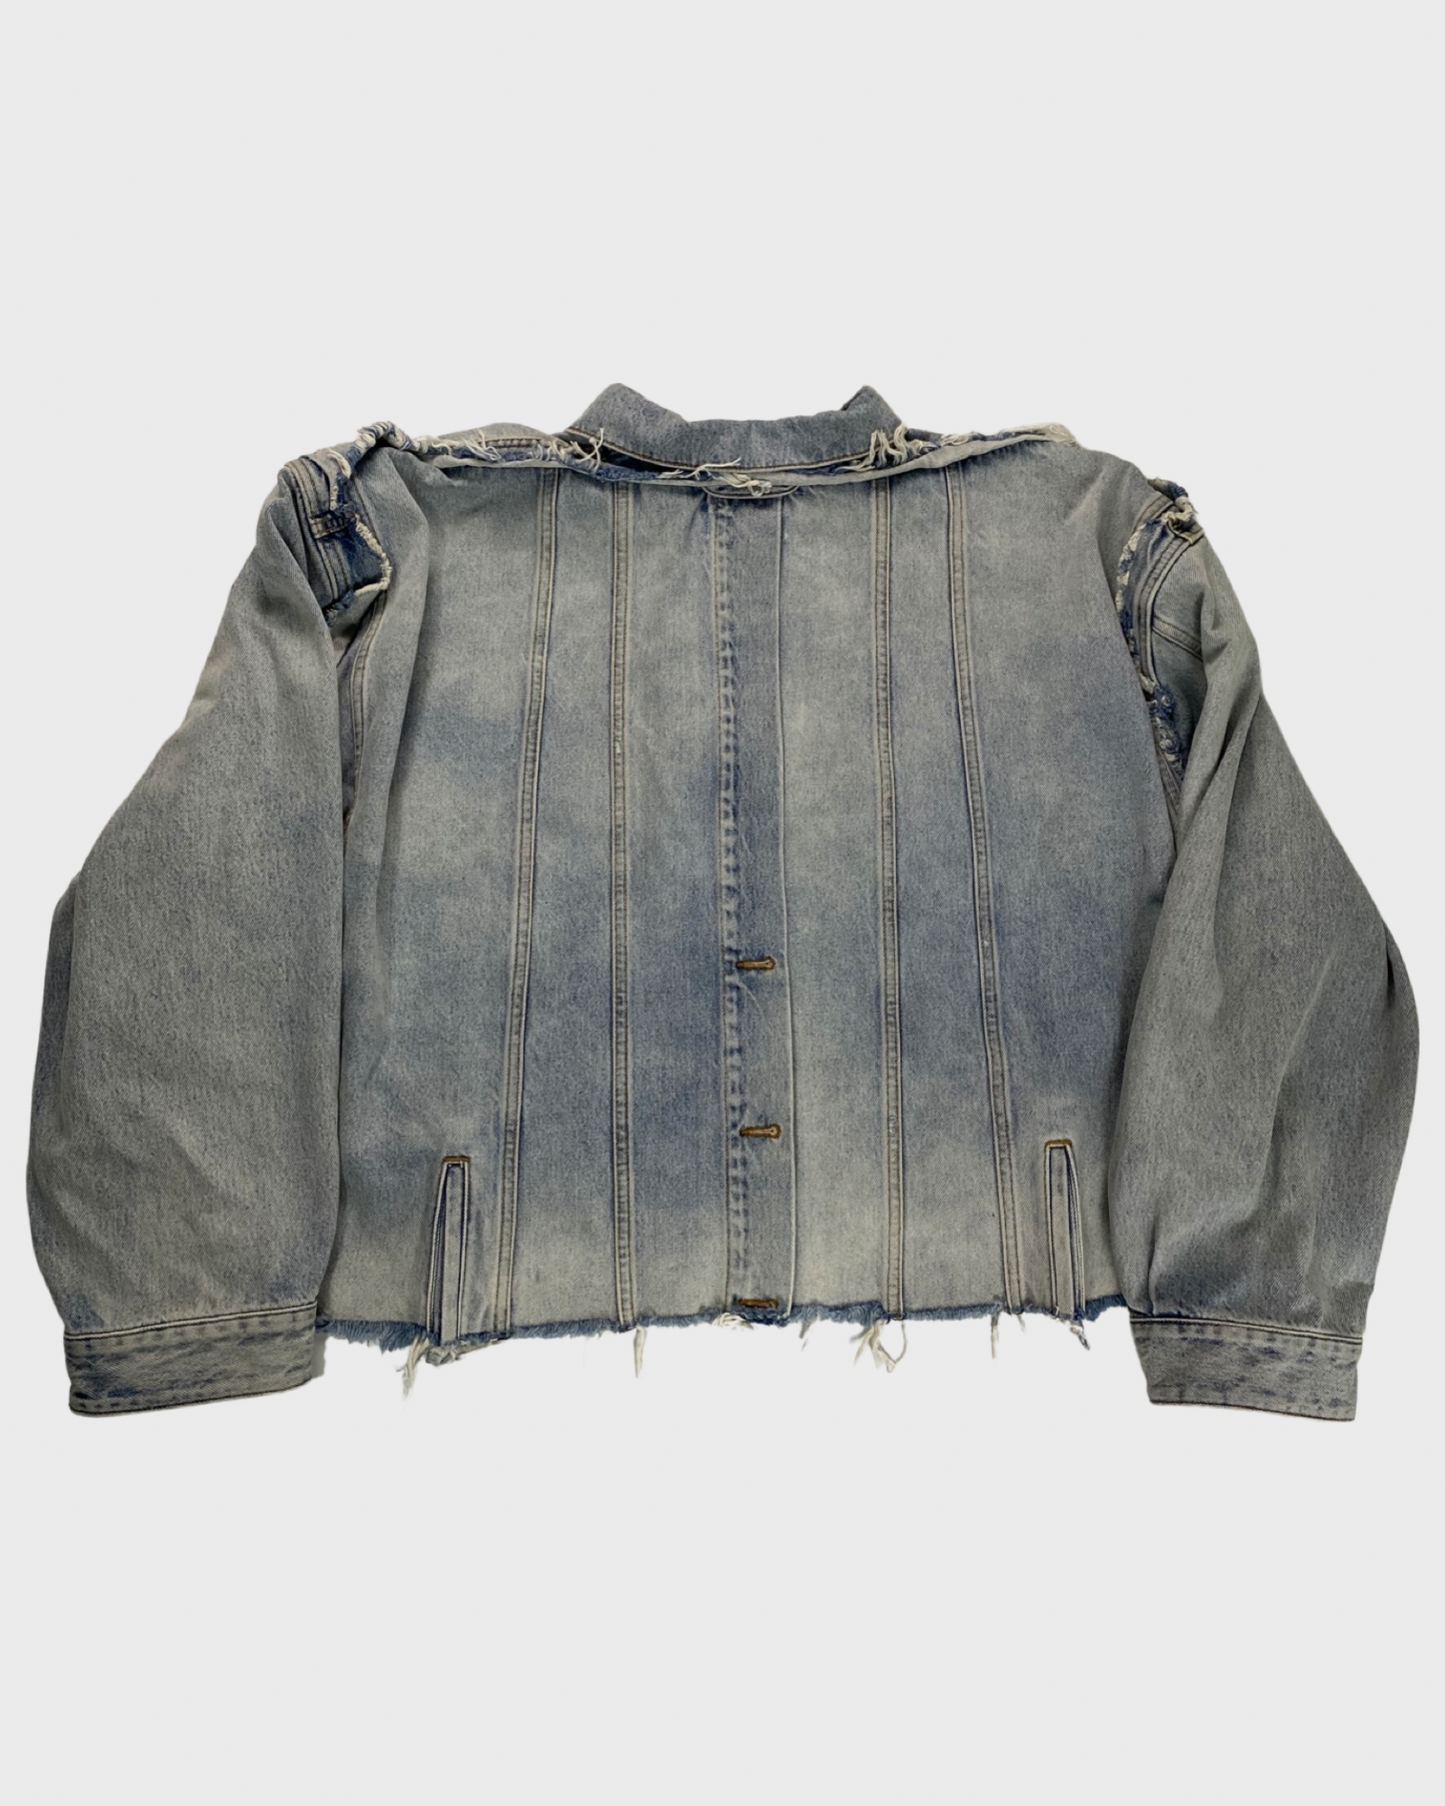 Balenciaga deconstructed denim jacket SZ:2|4